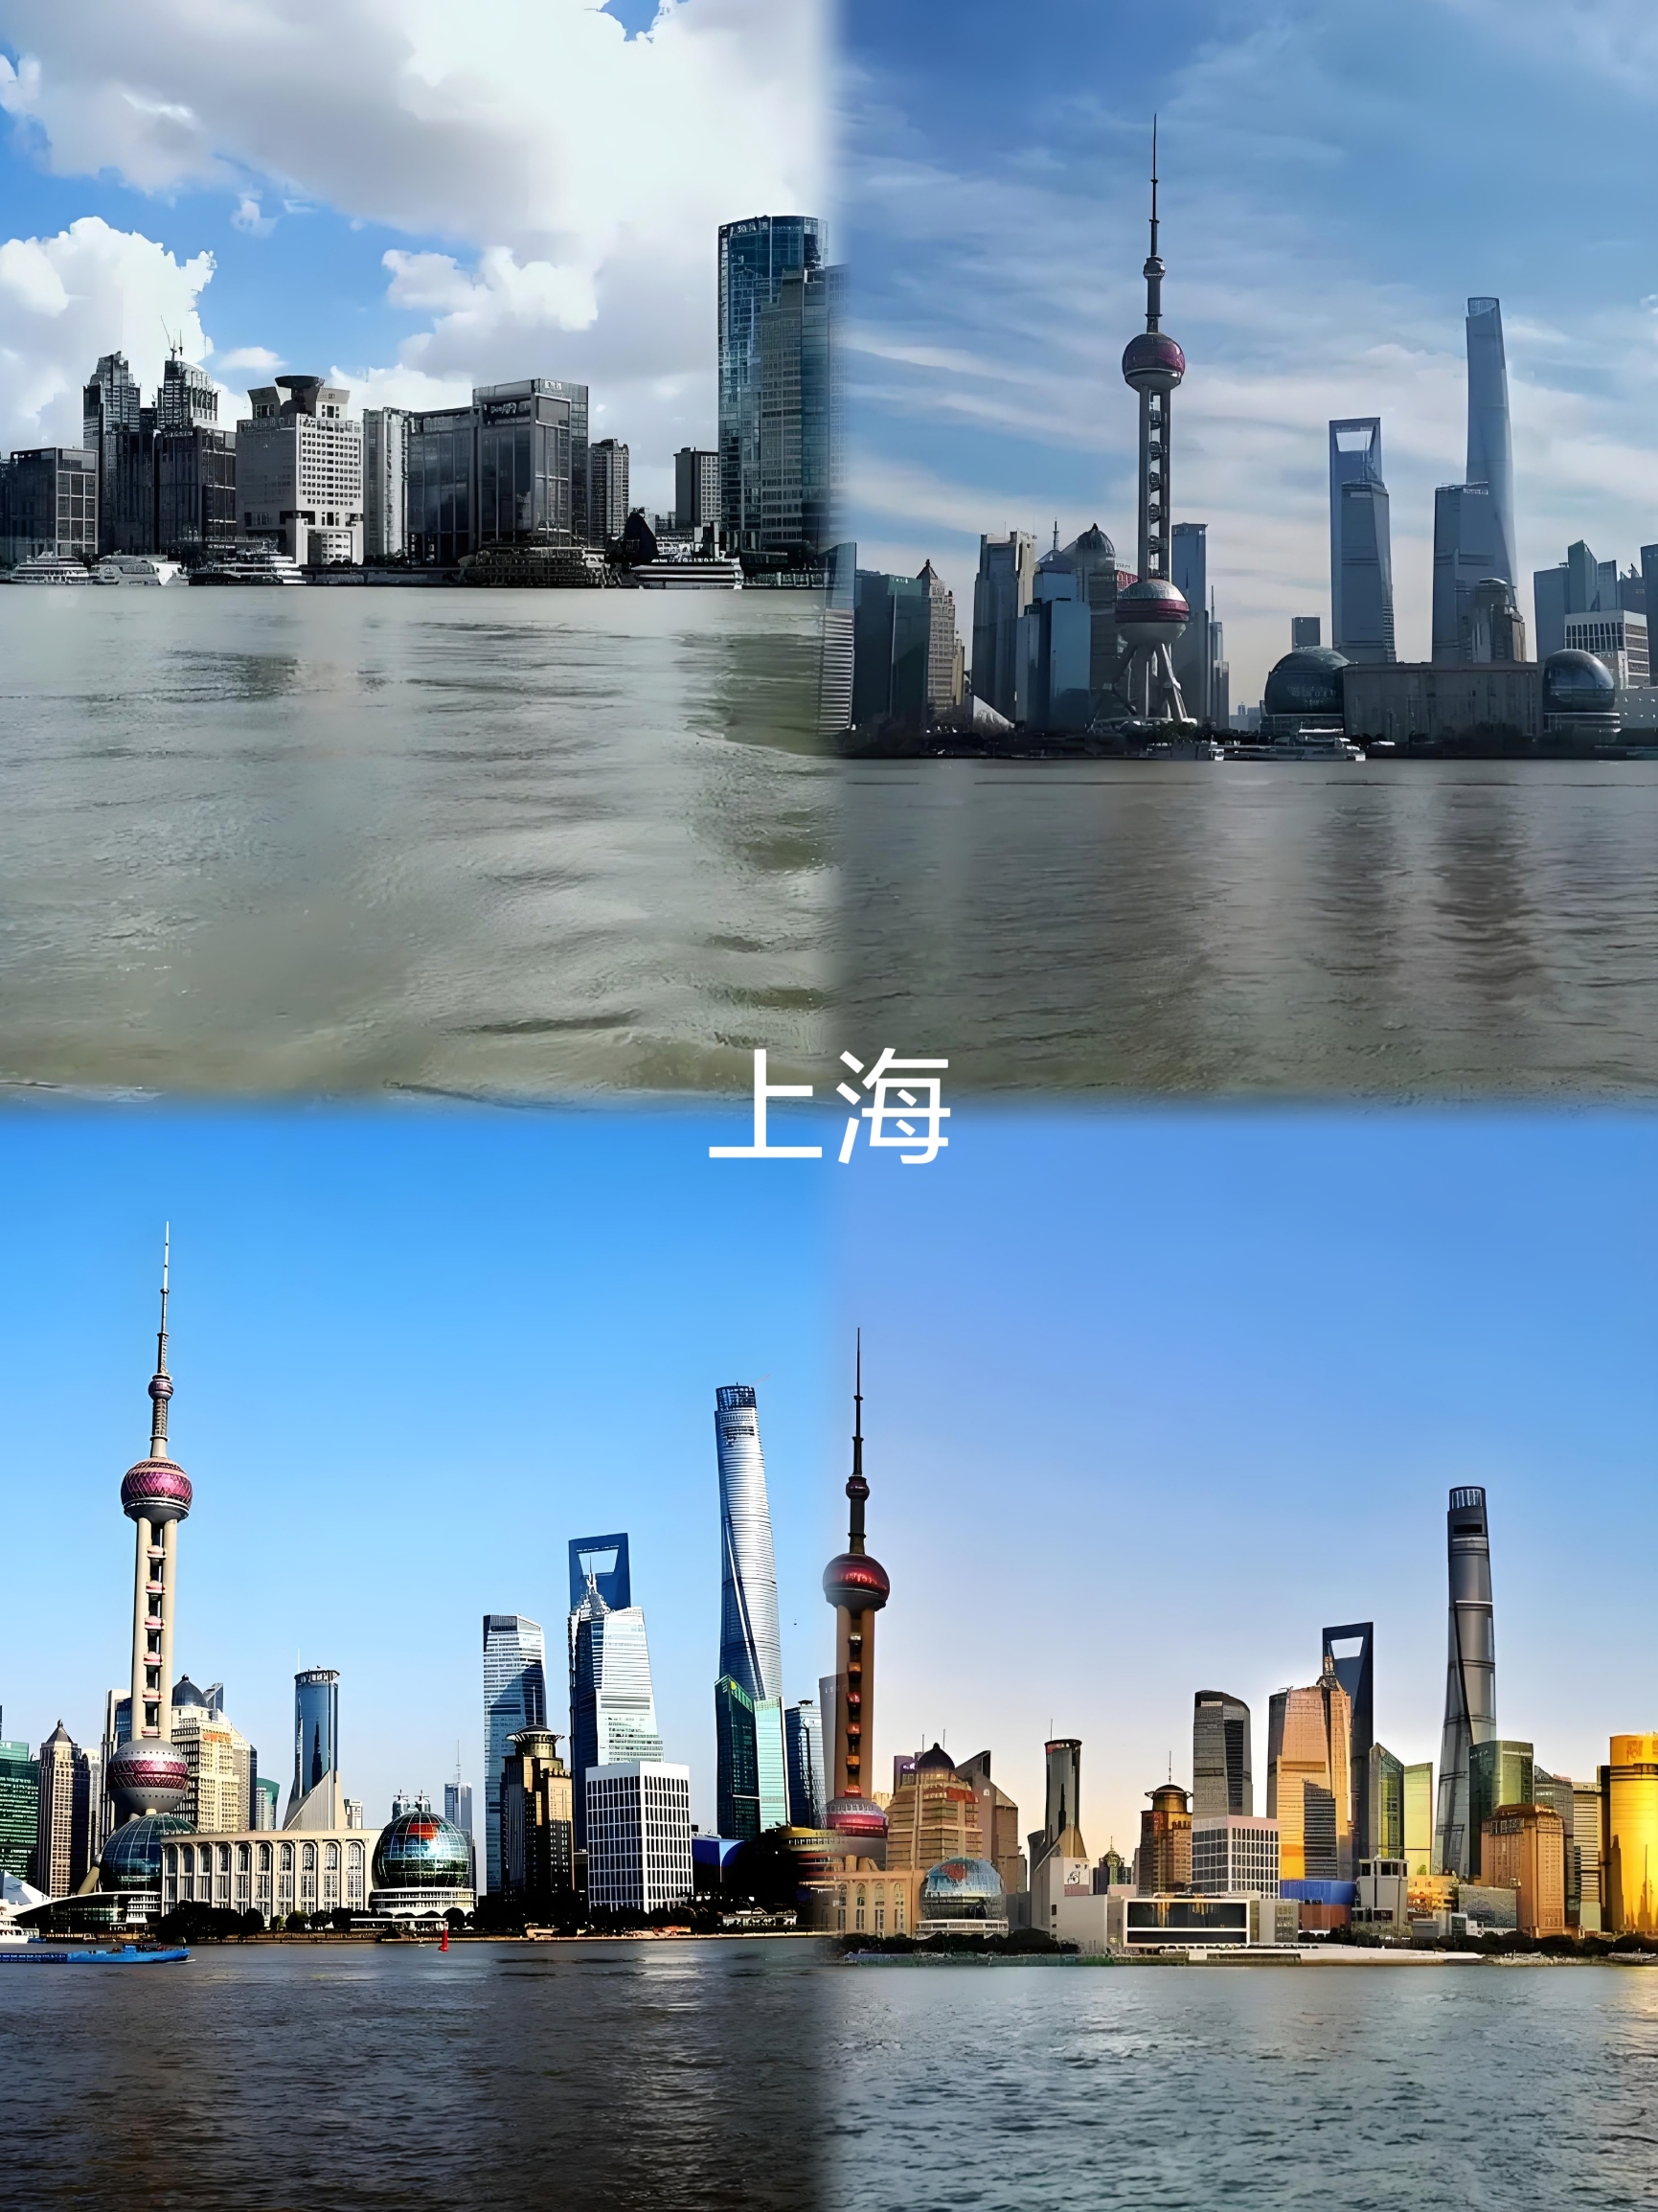 上海是一个充满魅力的城市，有很多值得一游的景点。以下是一些推荐：   - 外滩：位于黄浦江畔，拥有5